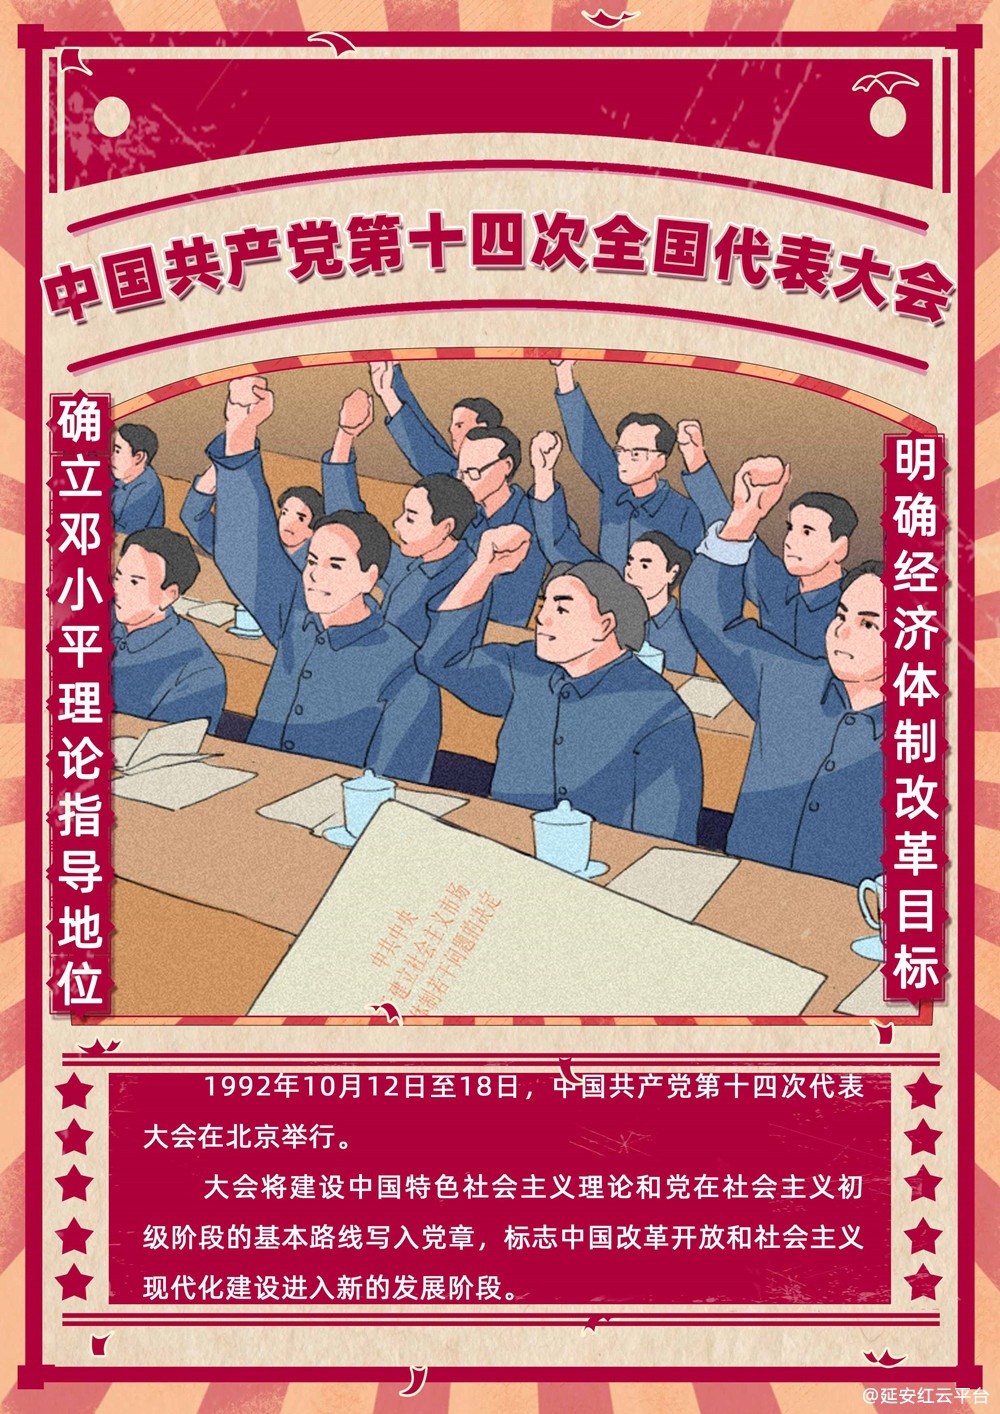 中国共产党第十四次全国代表大会.jpg